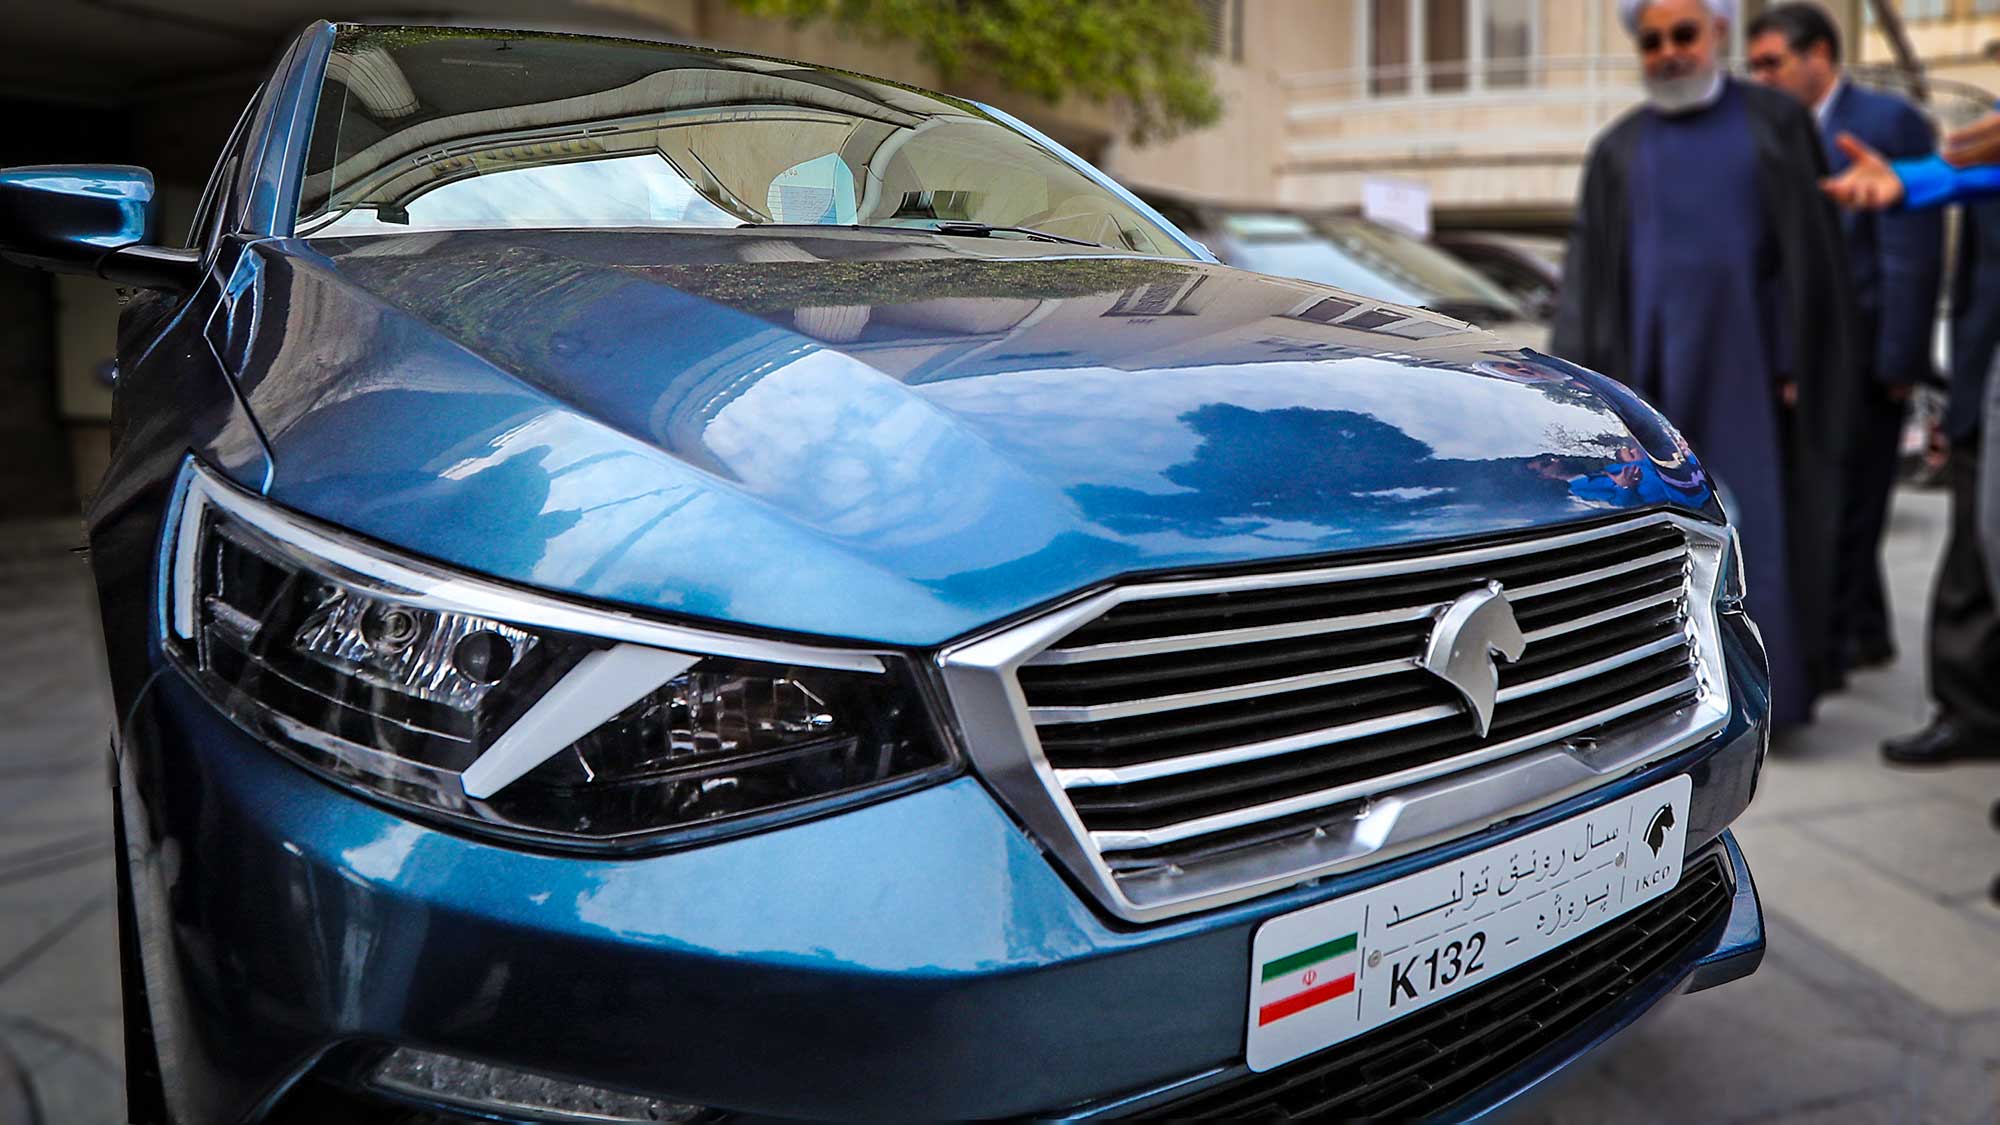 اعلام طرح فروش خودرو جدید K132 شرکت ایران خودرو - تیر 99 + جدول